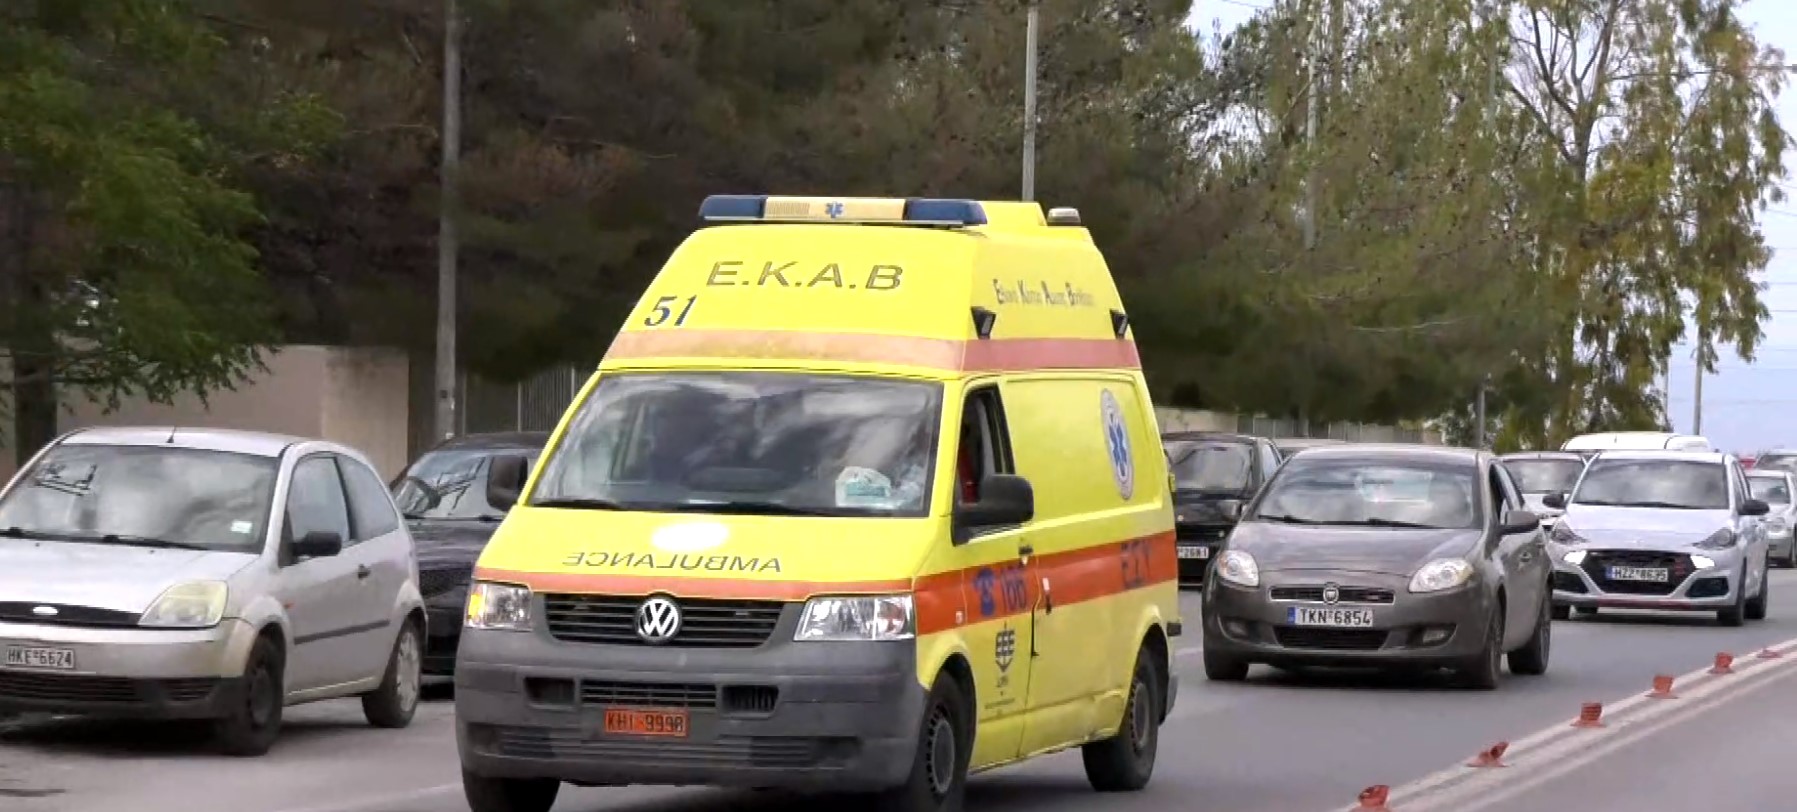 Θεσσαλονίκη: Ταλαιπωρία για εξάχρονο αγοράκι που τραυματίστηκε στο αυτί